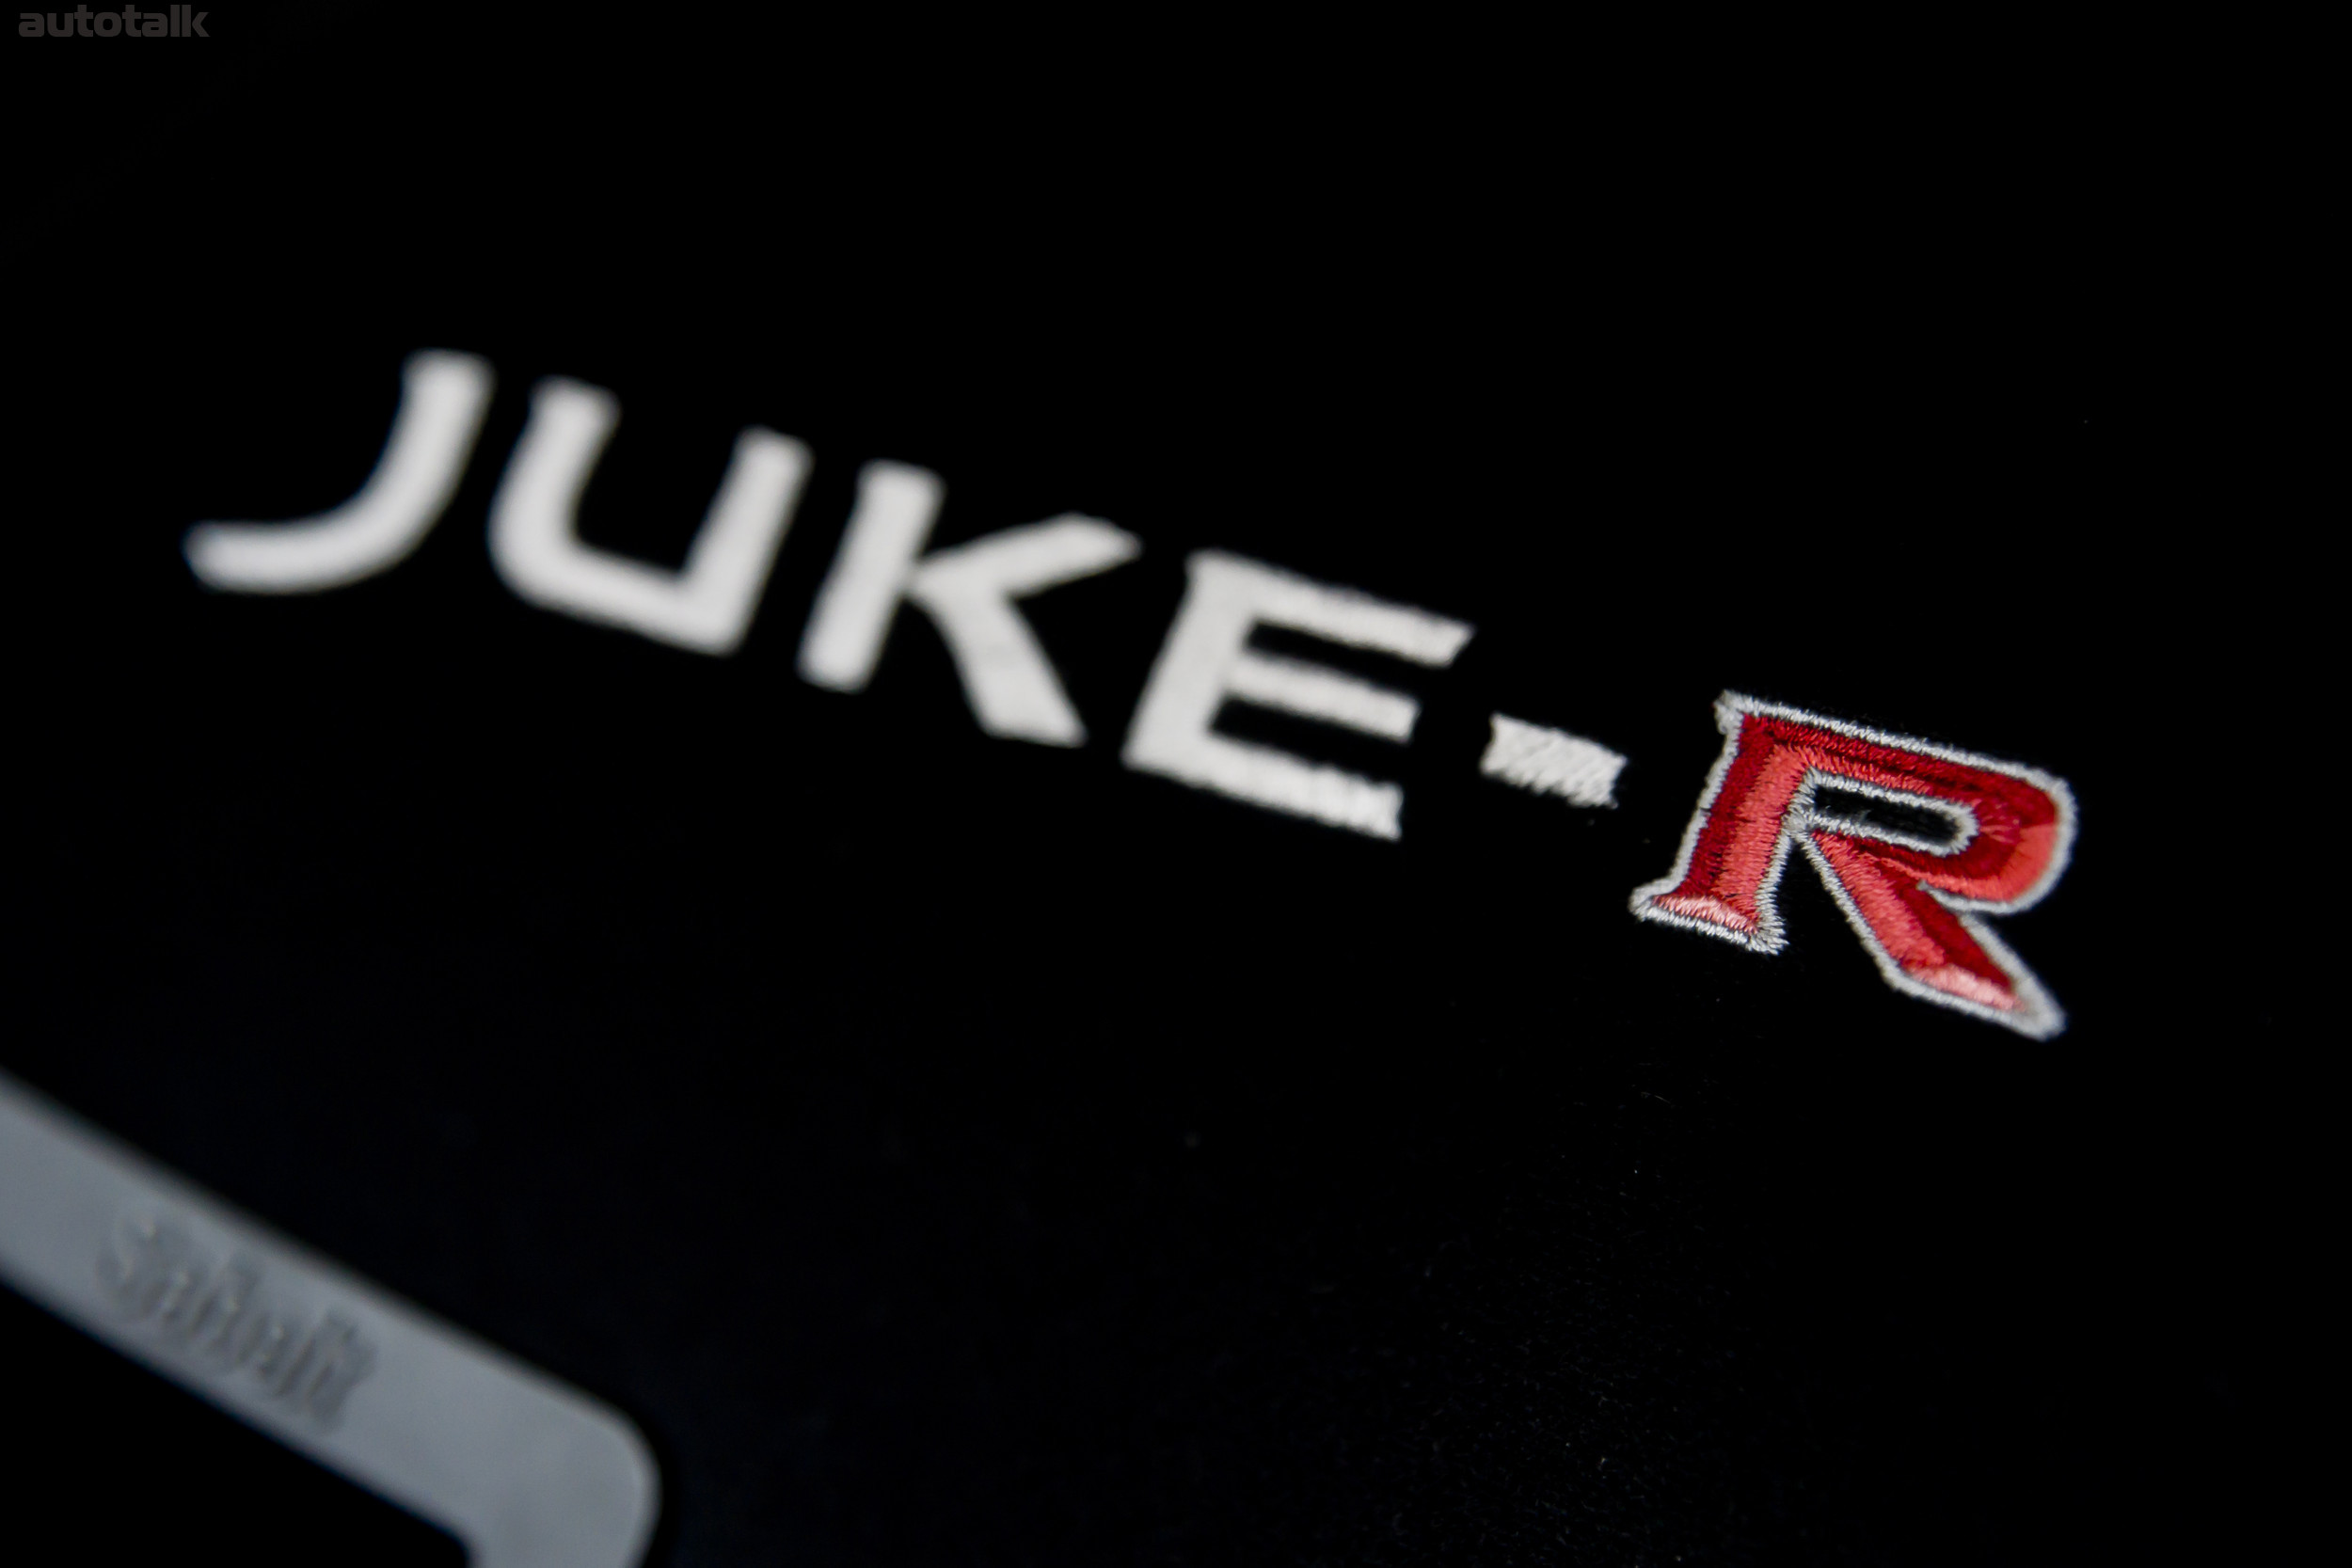 2013 Nissan Juke-R